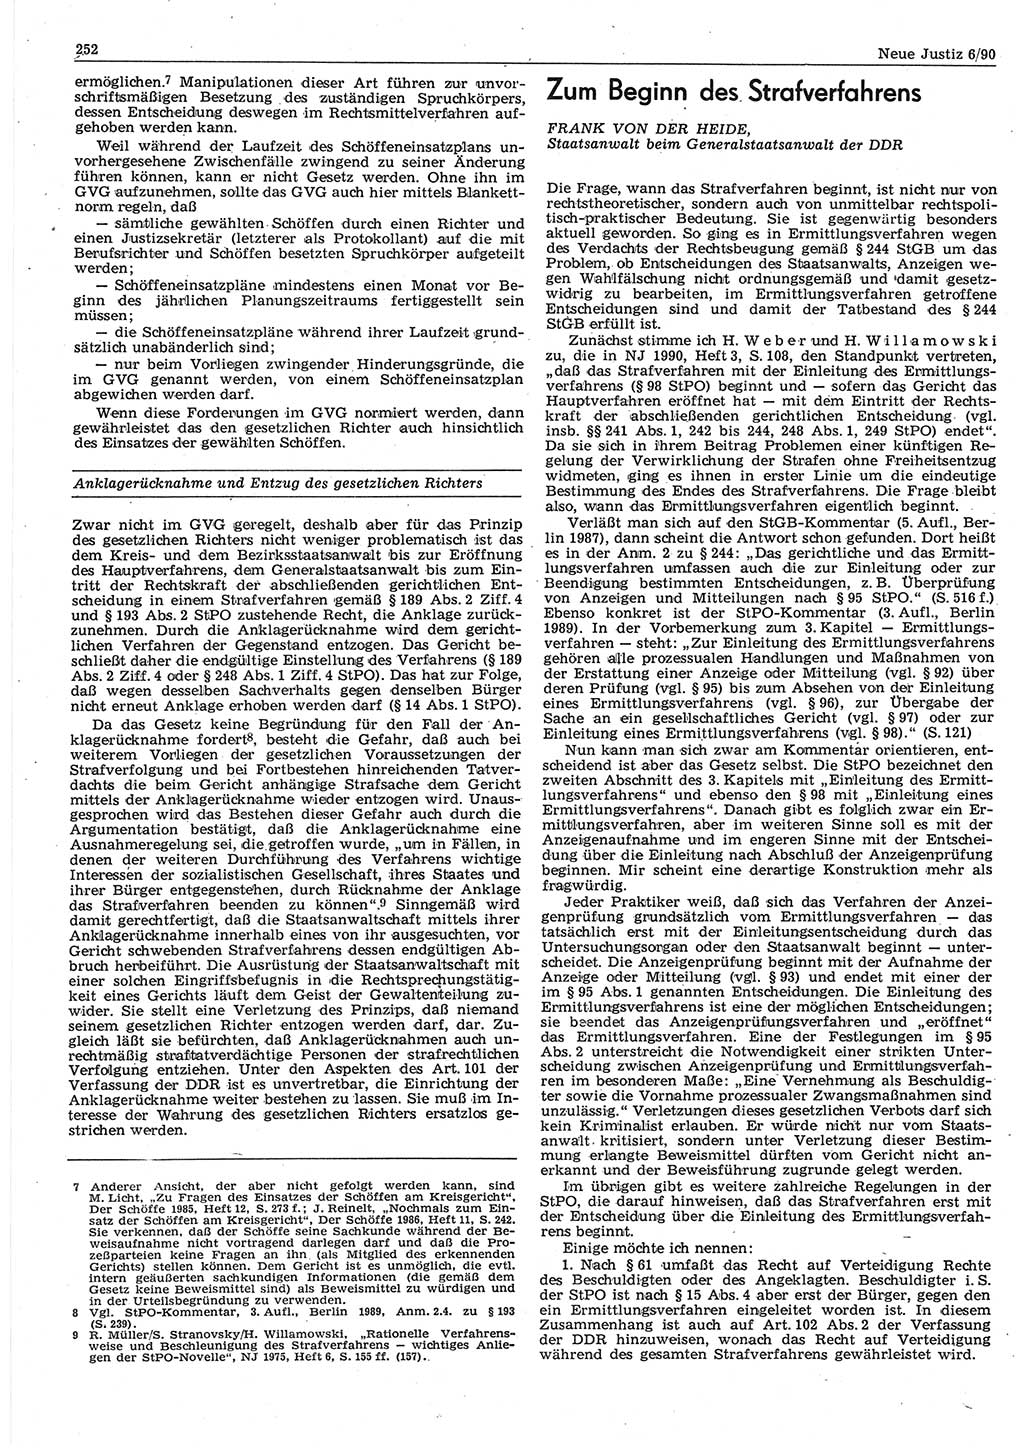 Neue Justiz (NJ), Zeitschrift für Rechtsetzung und Rechtsanwendung [Deutsche Demokratische Republik (DDR)], 44. Jahrgang 1990, Seite 252 (NJ DDR 1990, S. 252)